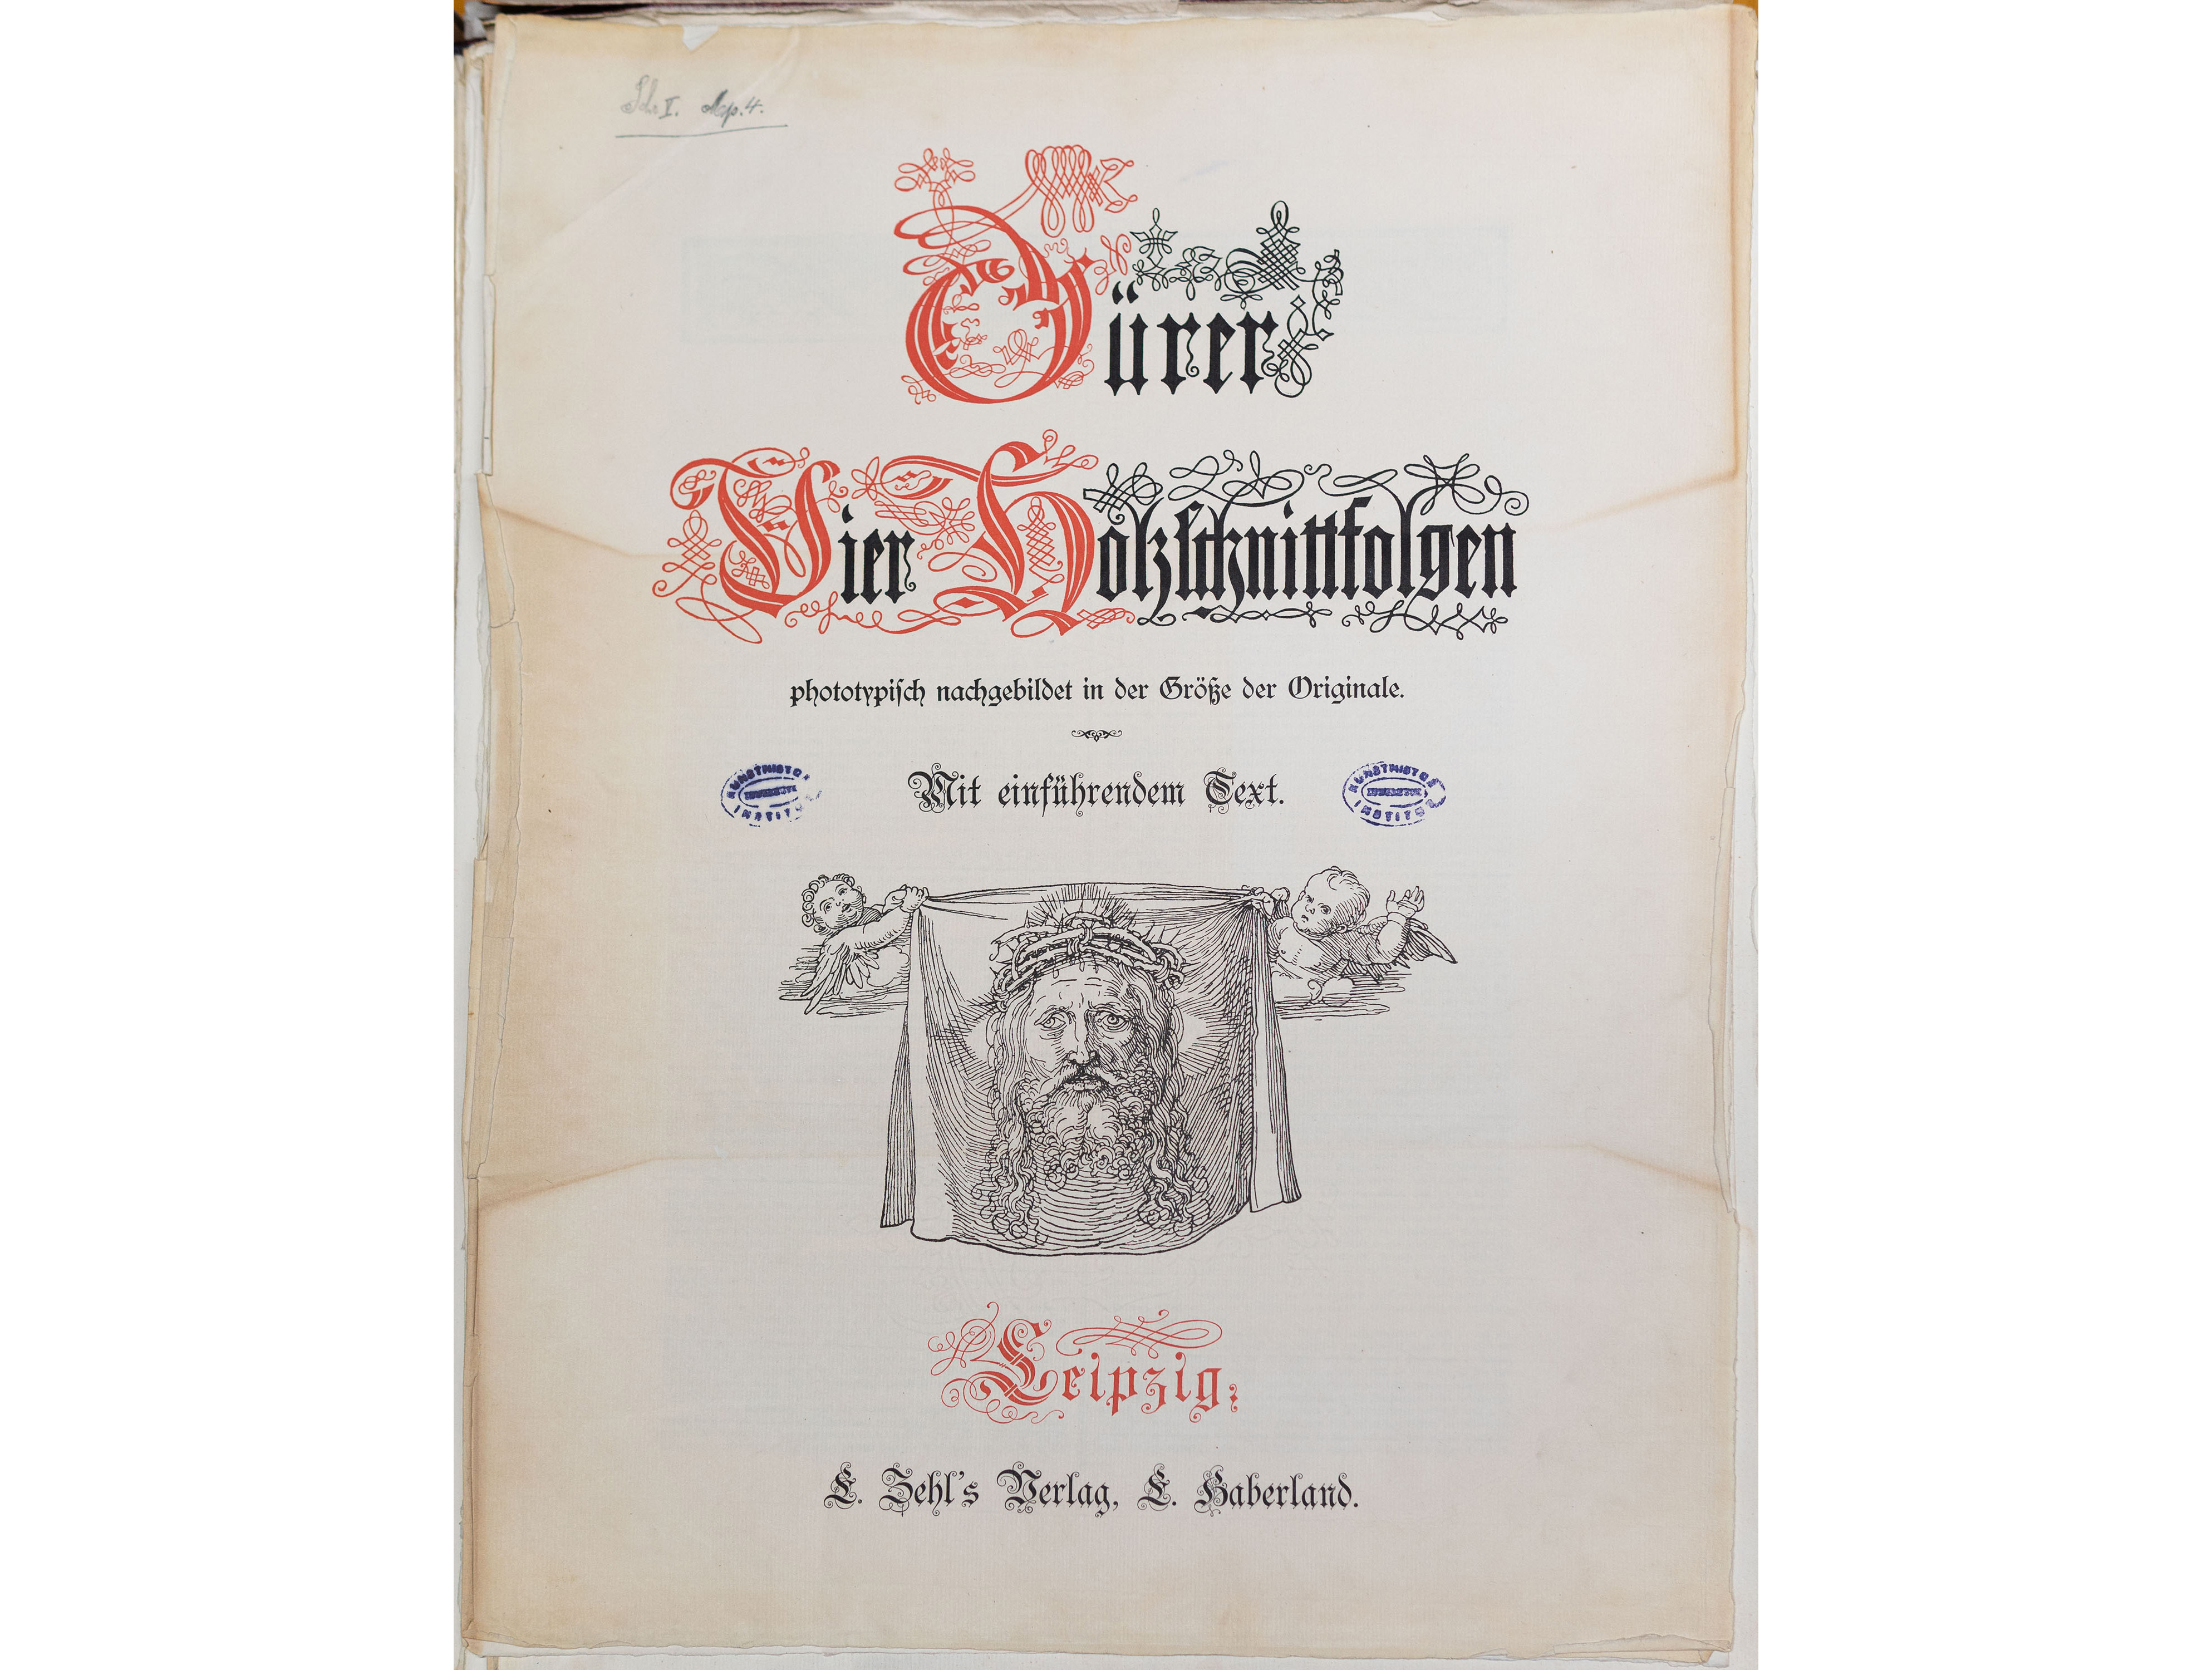 Dürer, Vier Holzschnittfolgen: phototypisch nachgebildet in der Größe der Originale, 1886, L. Zehl’s Verlag, L. Haberland, Leipzig